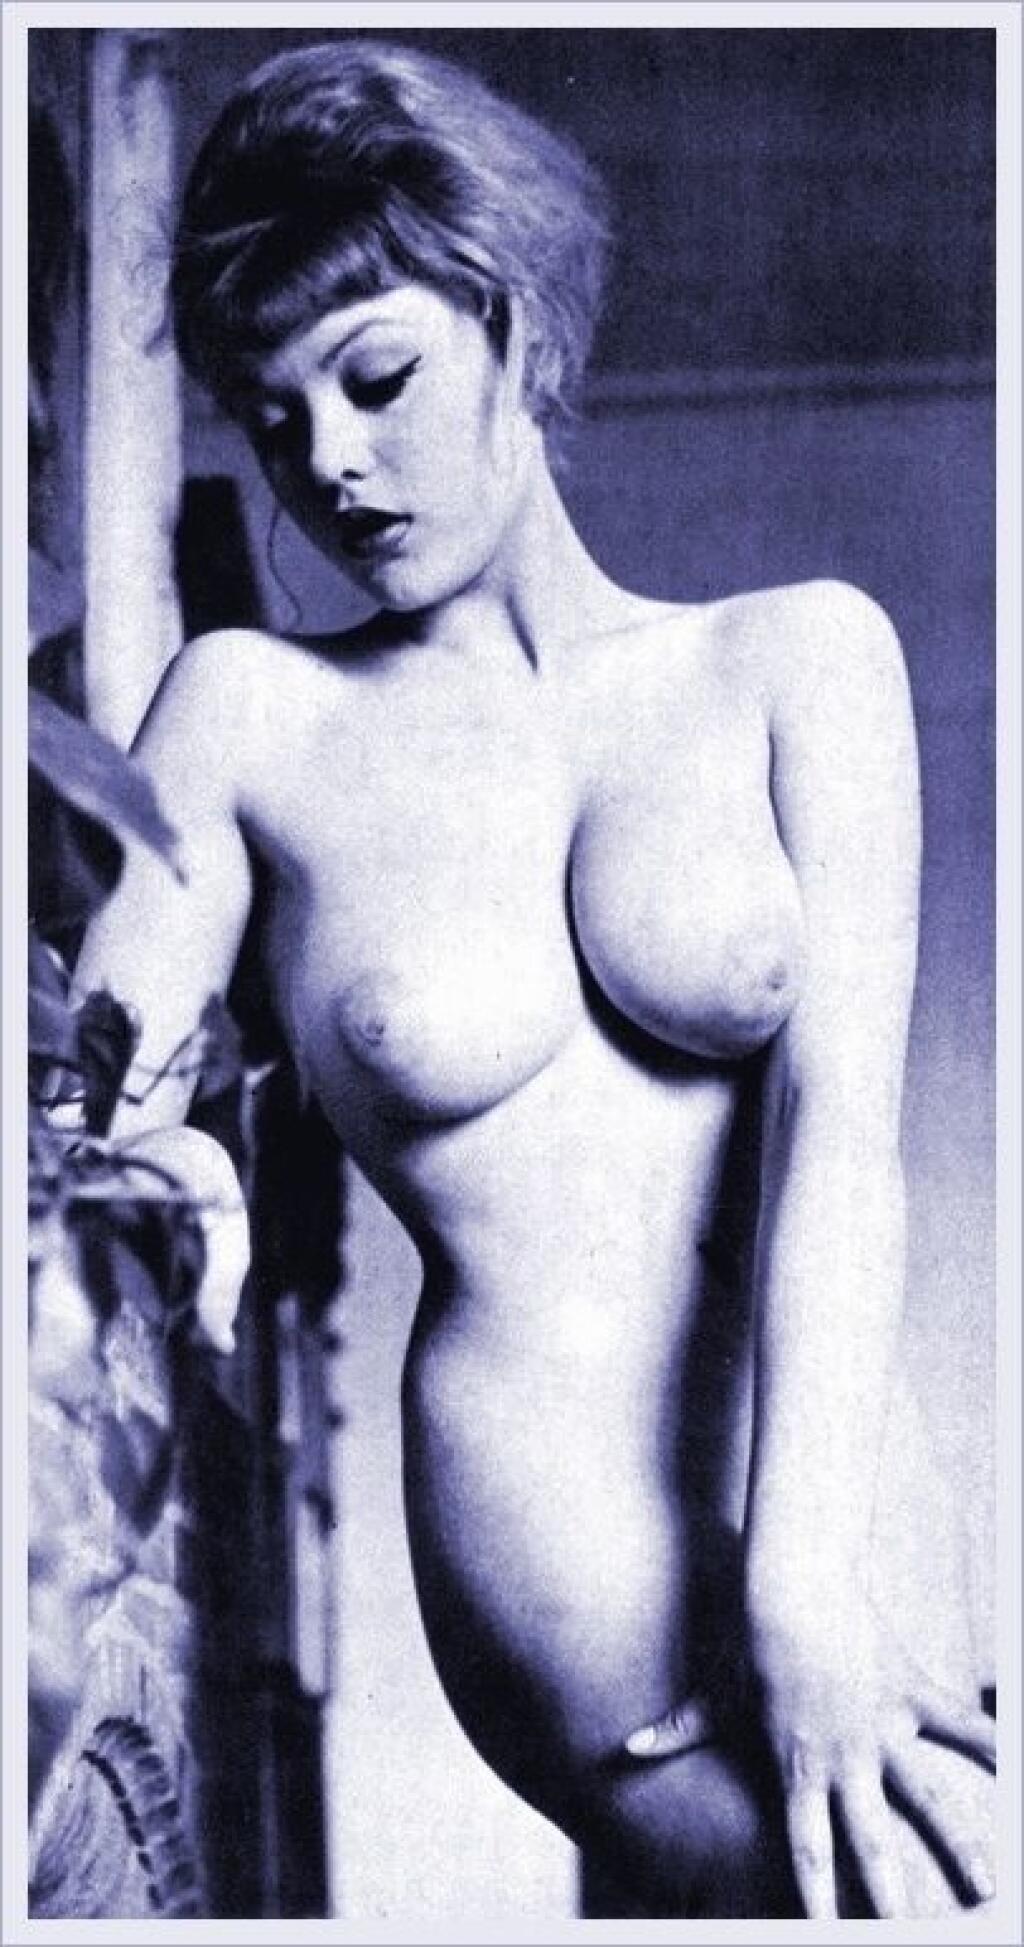 Erotické FOTO Playboy modelky a Bond Girl Margaret Nolan.